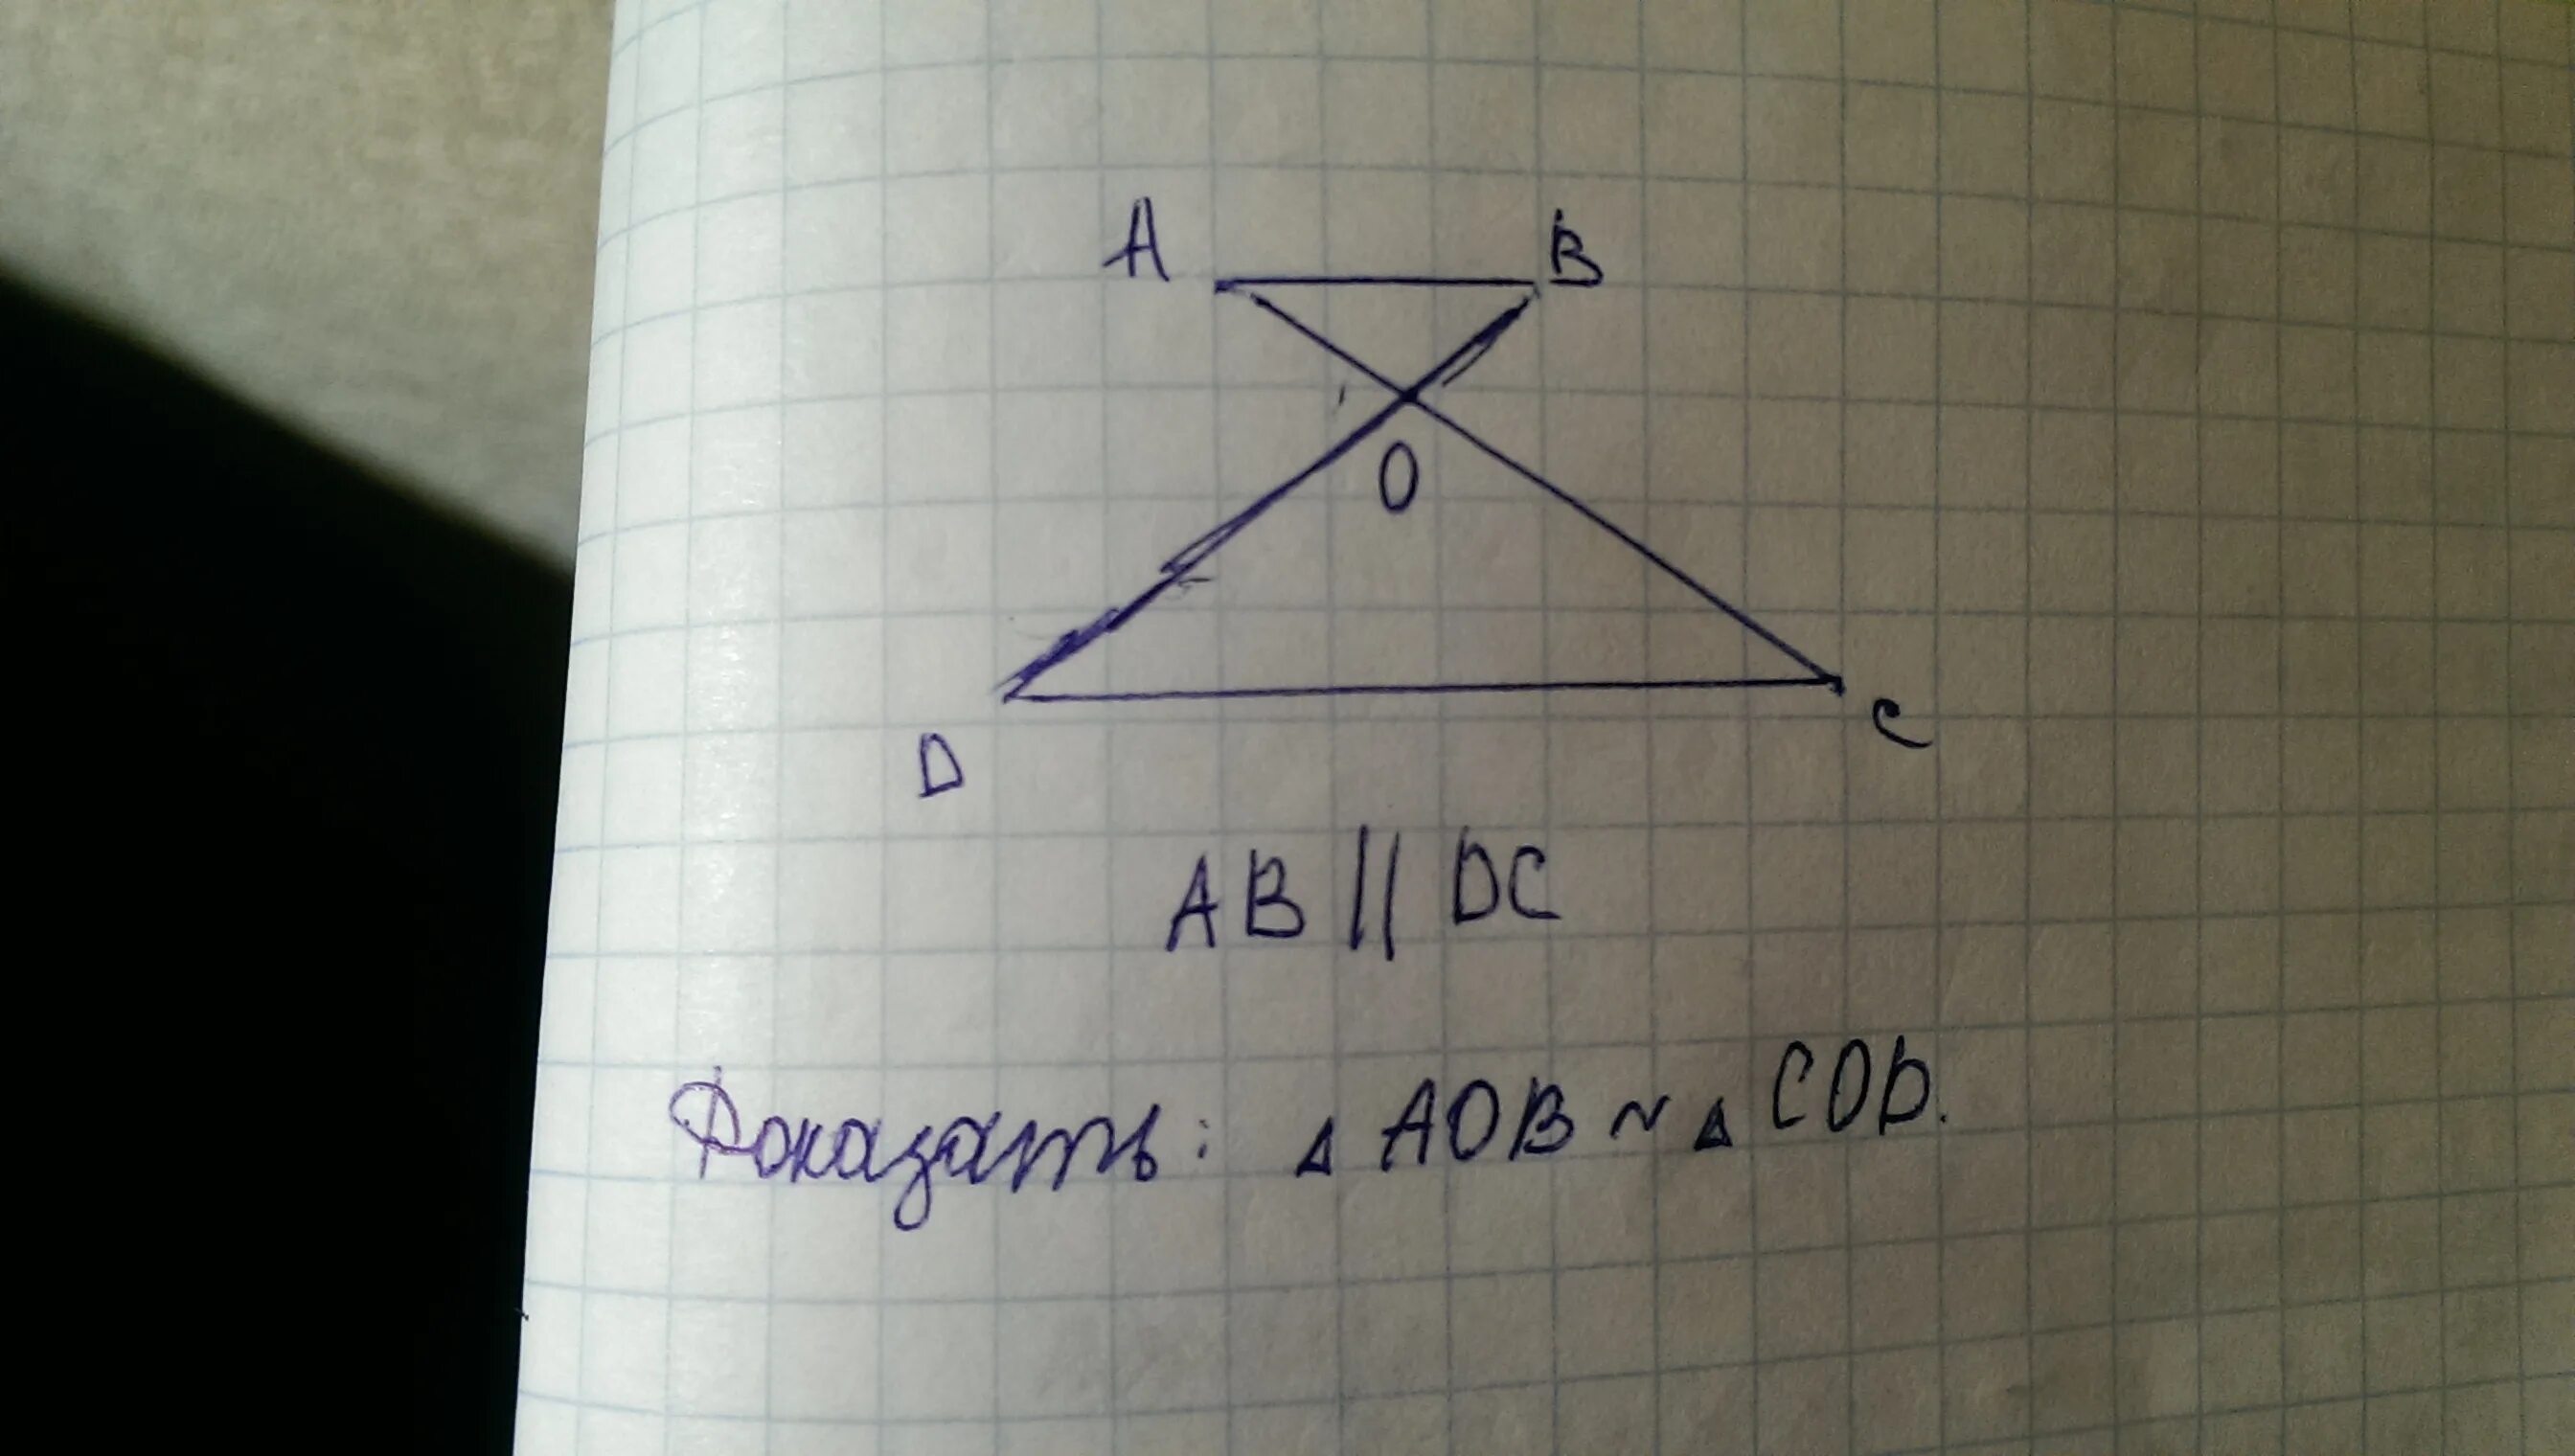 Ab параллельна CD. Доказать что аб параллельно СД. Треугольник АОВ И сод. Ab параллельно DC.